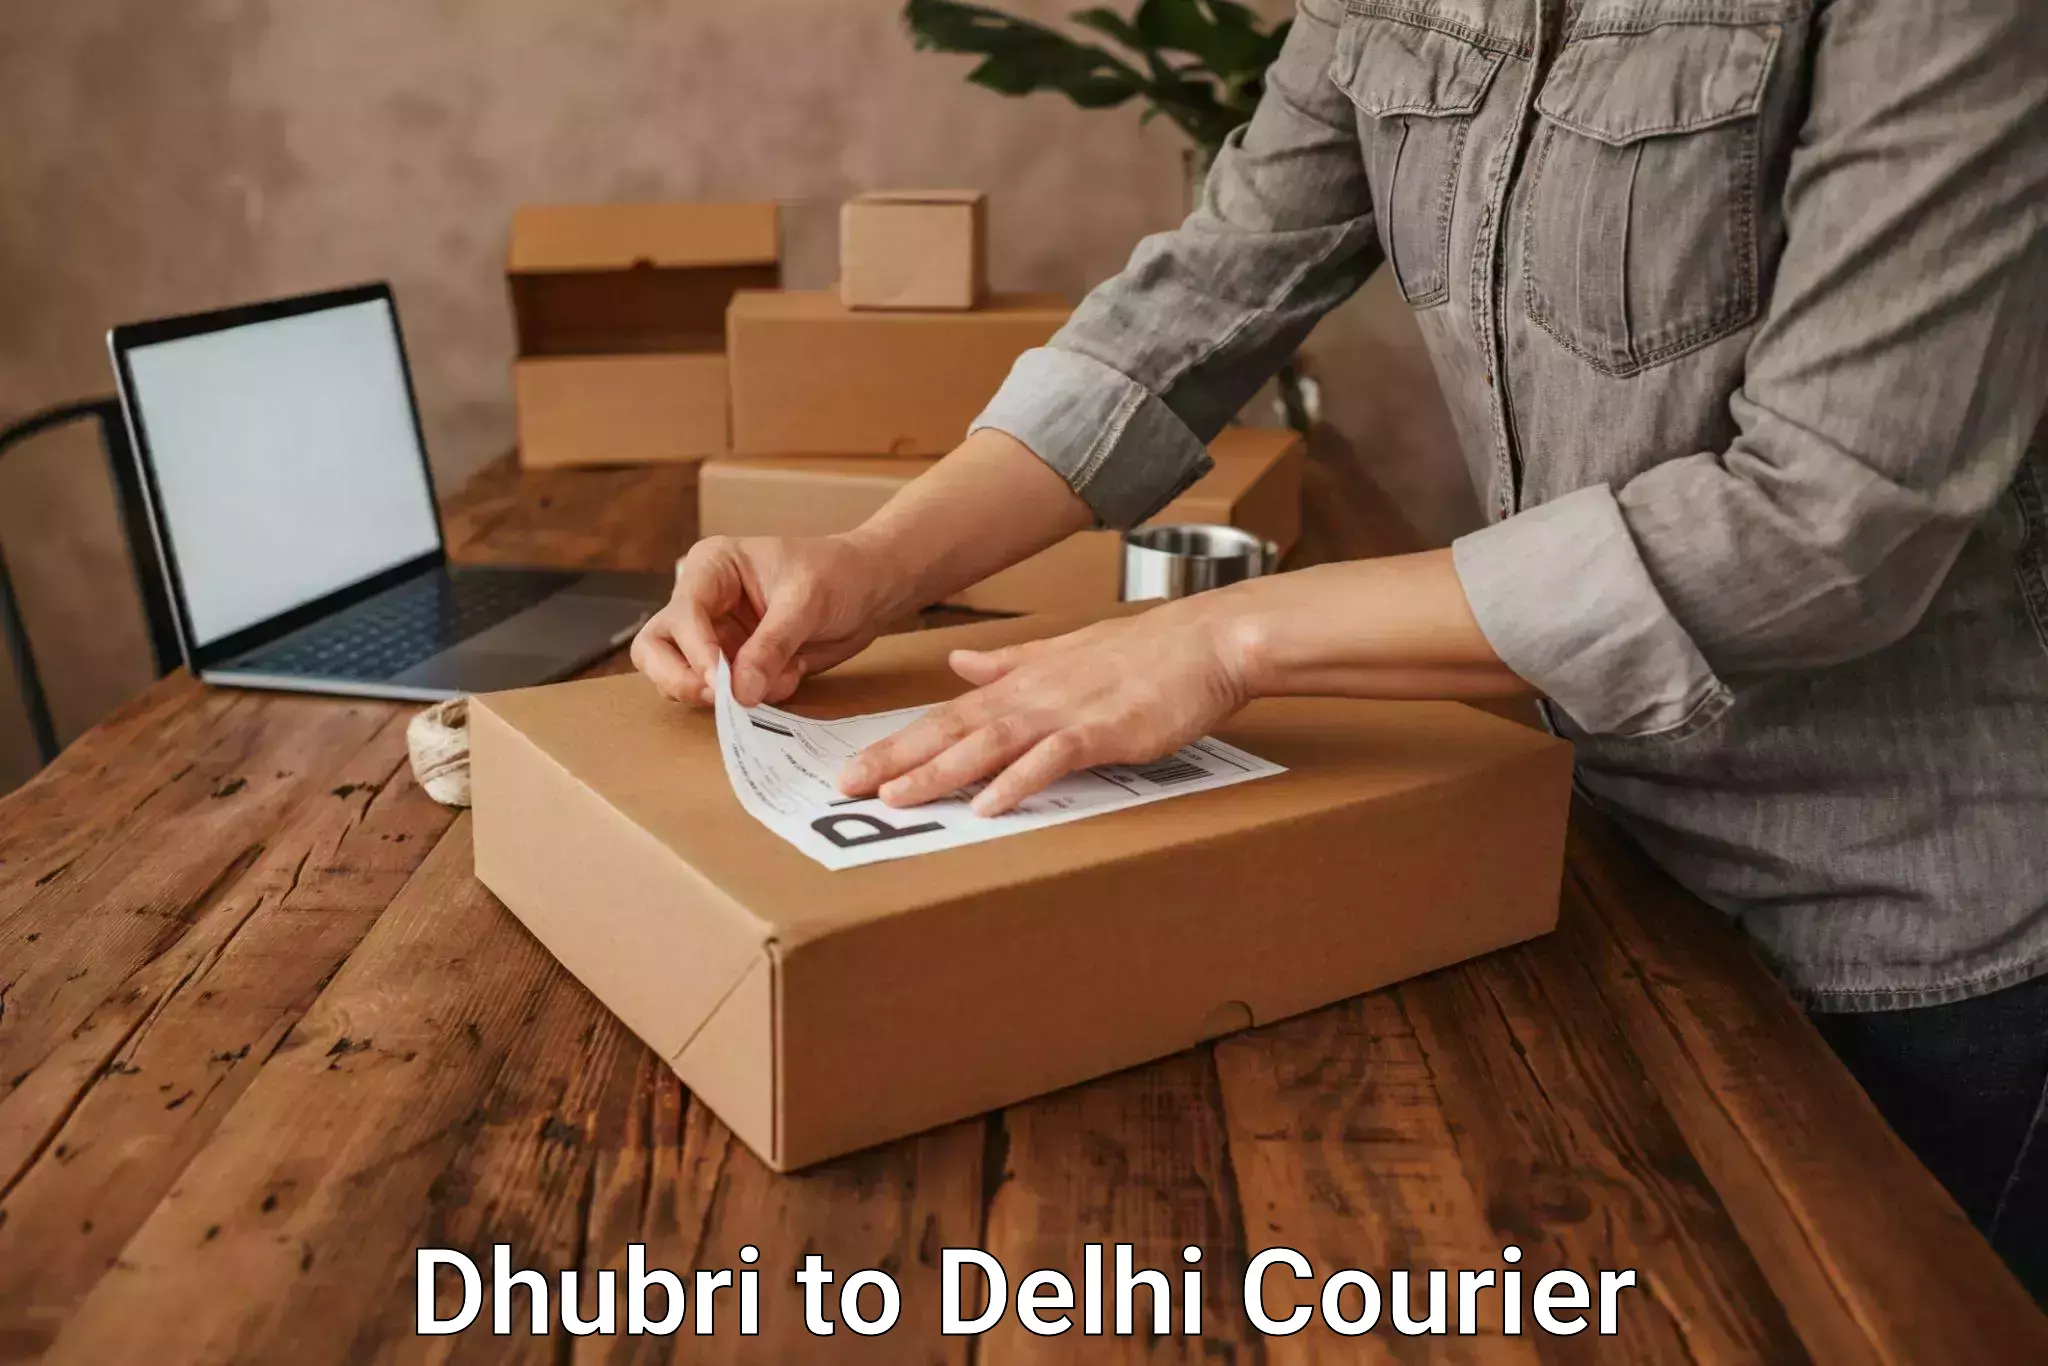 Scheduled delivery in Dhubri to Jawaharlal Nehru University New Delhi